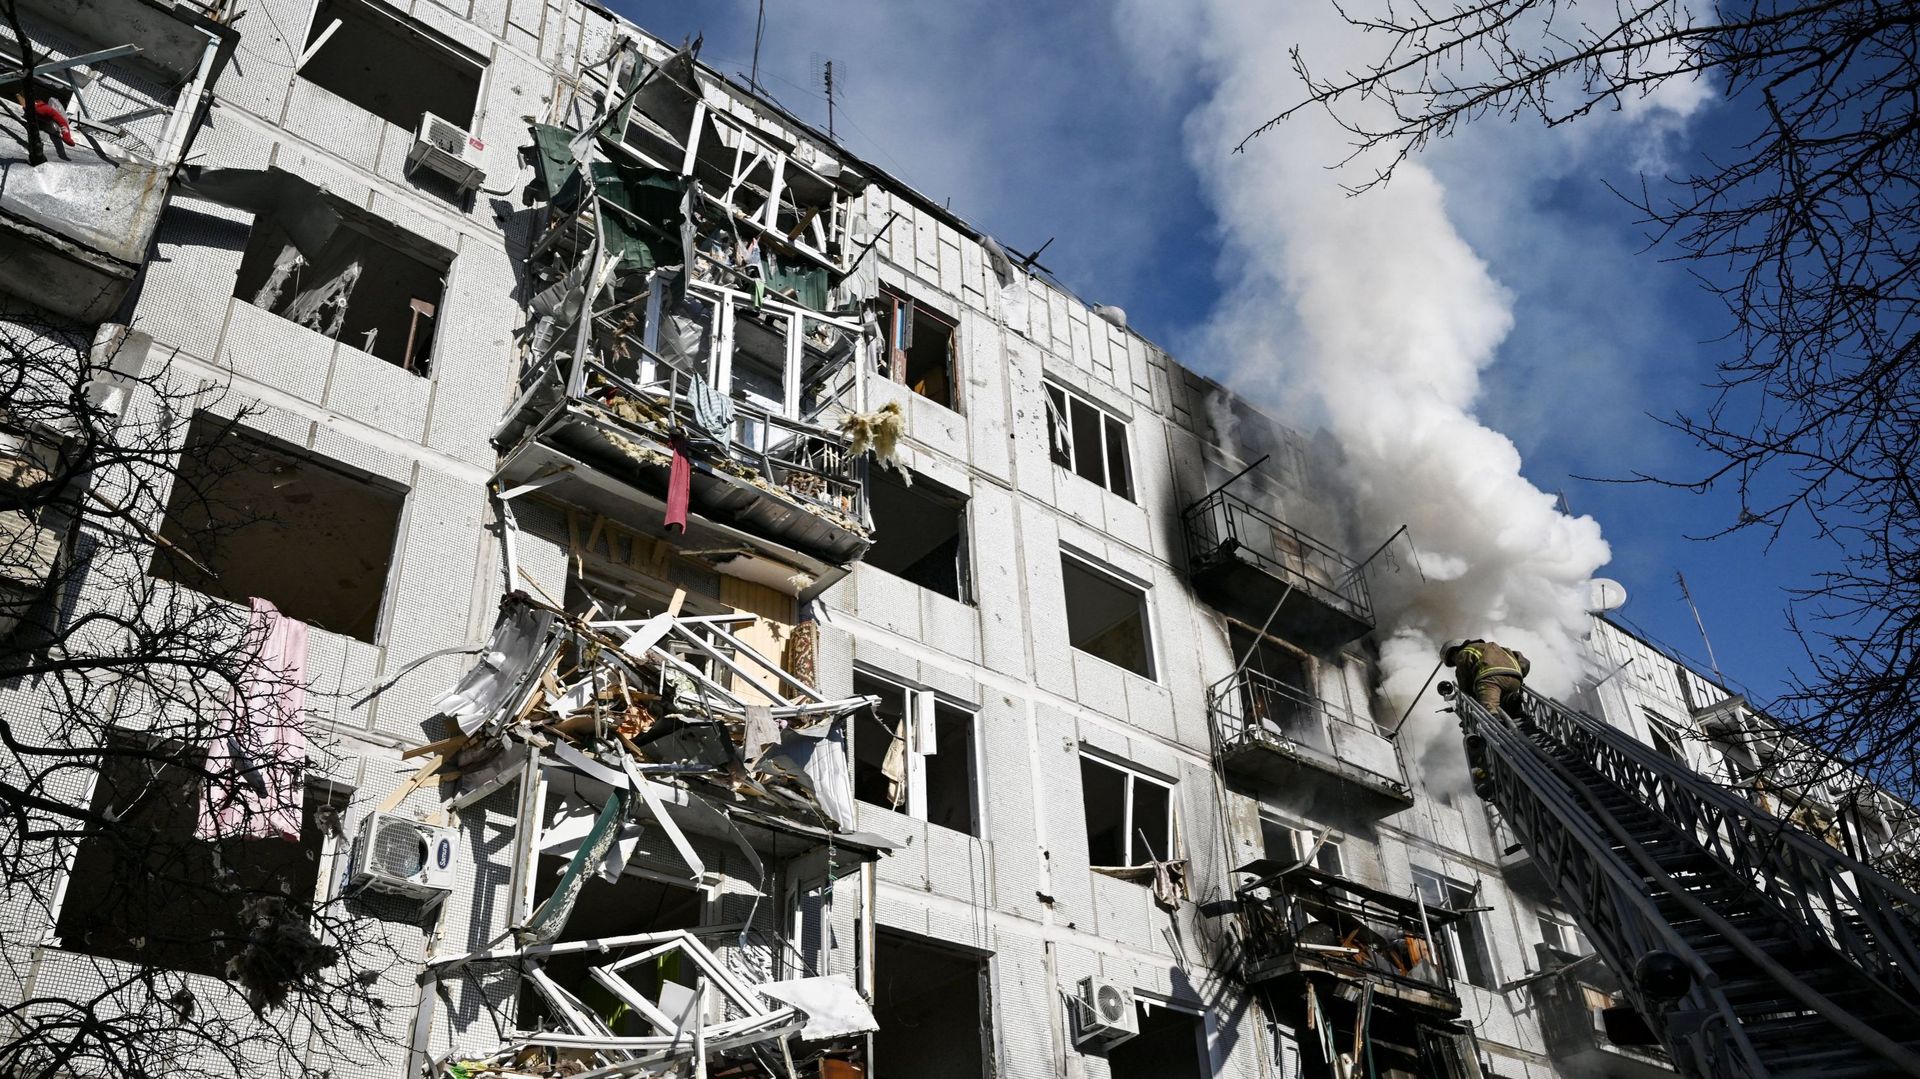 Des pompiers travaillent sur un incendie dans un bâtiment après des bombardements sur la ville de Tchouguiv, dans l’est de l’Ukraine, le 24 février 2022.